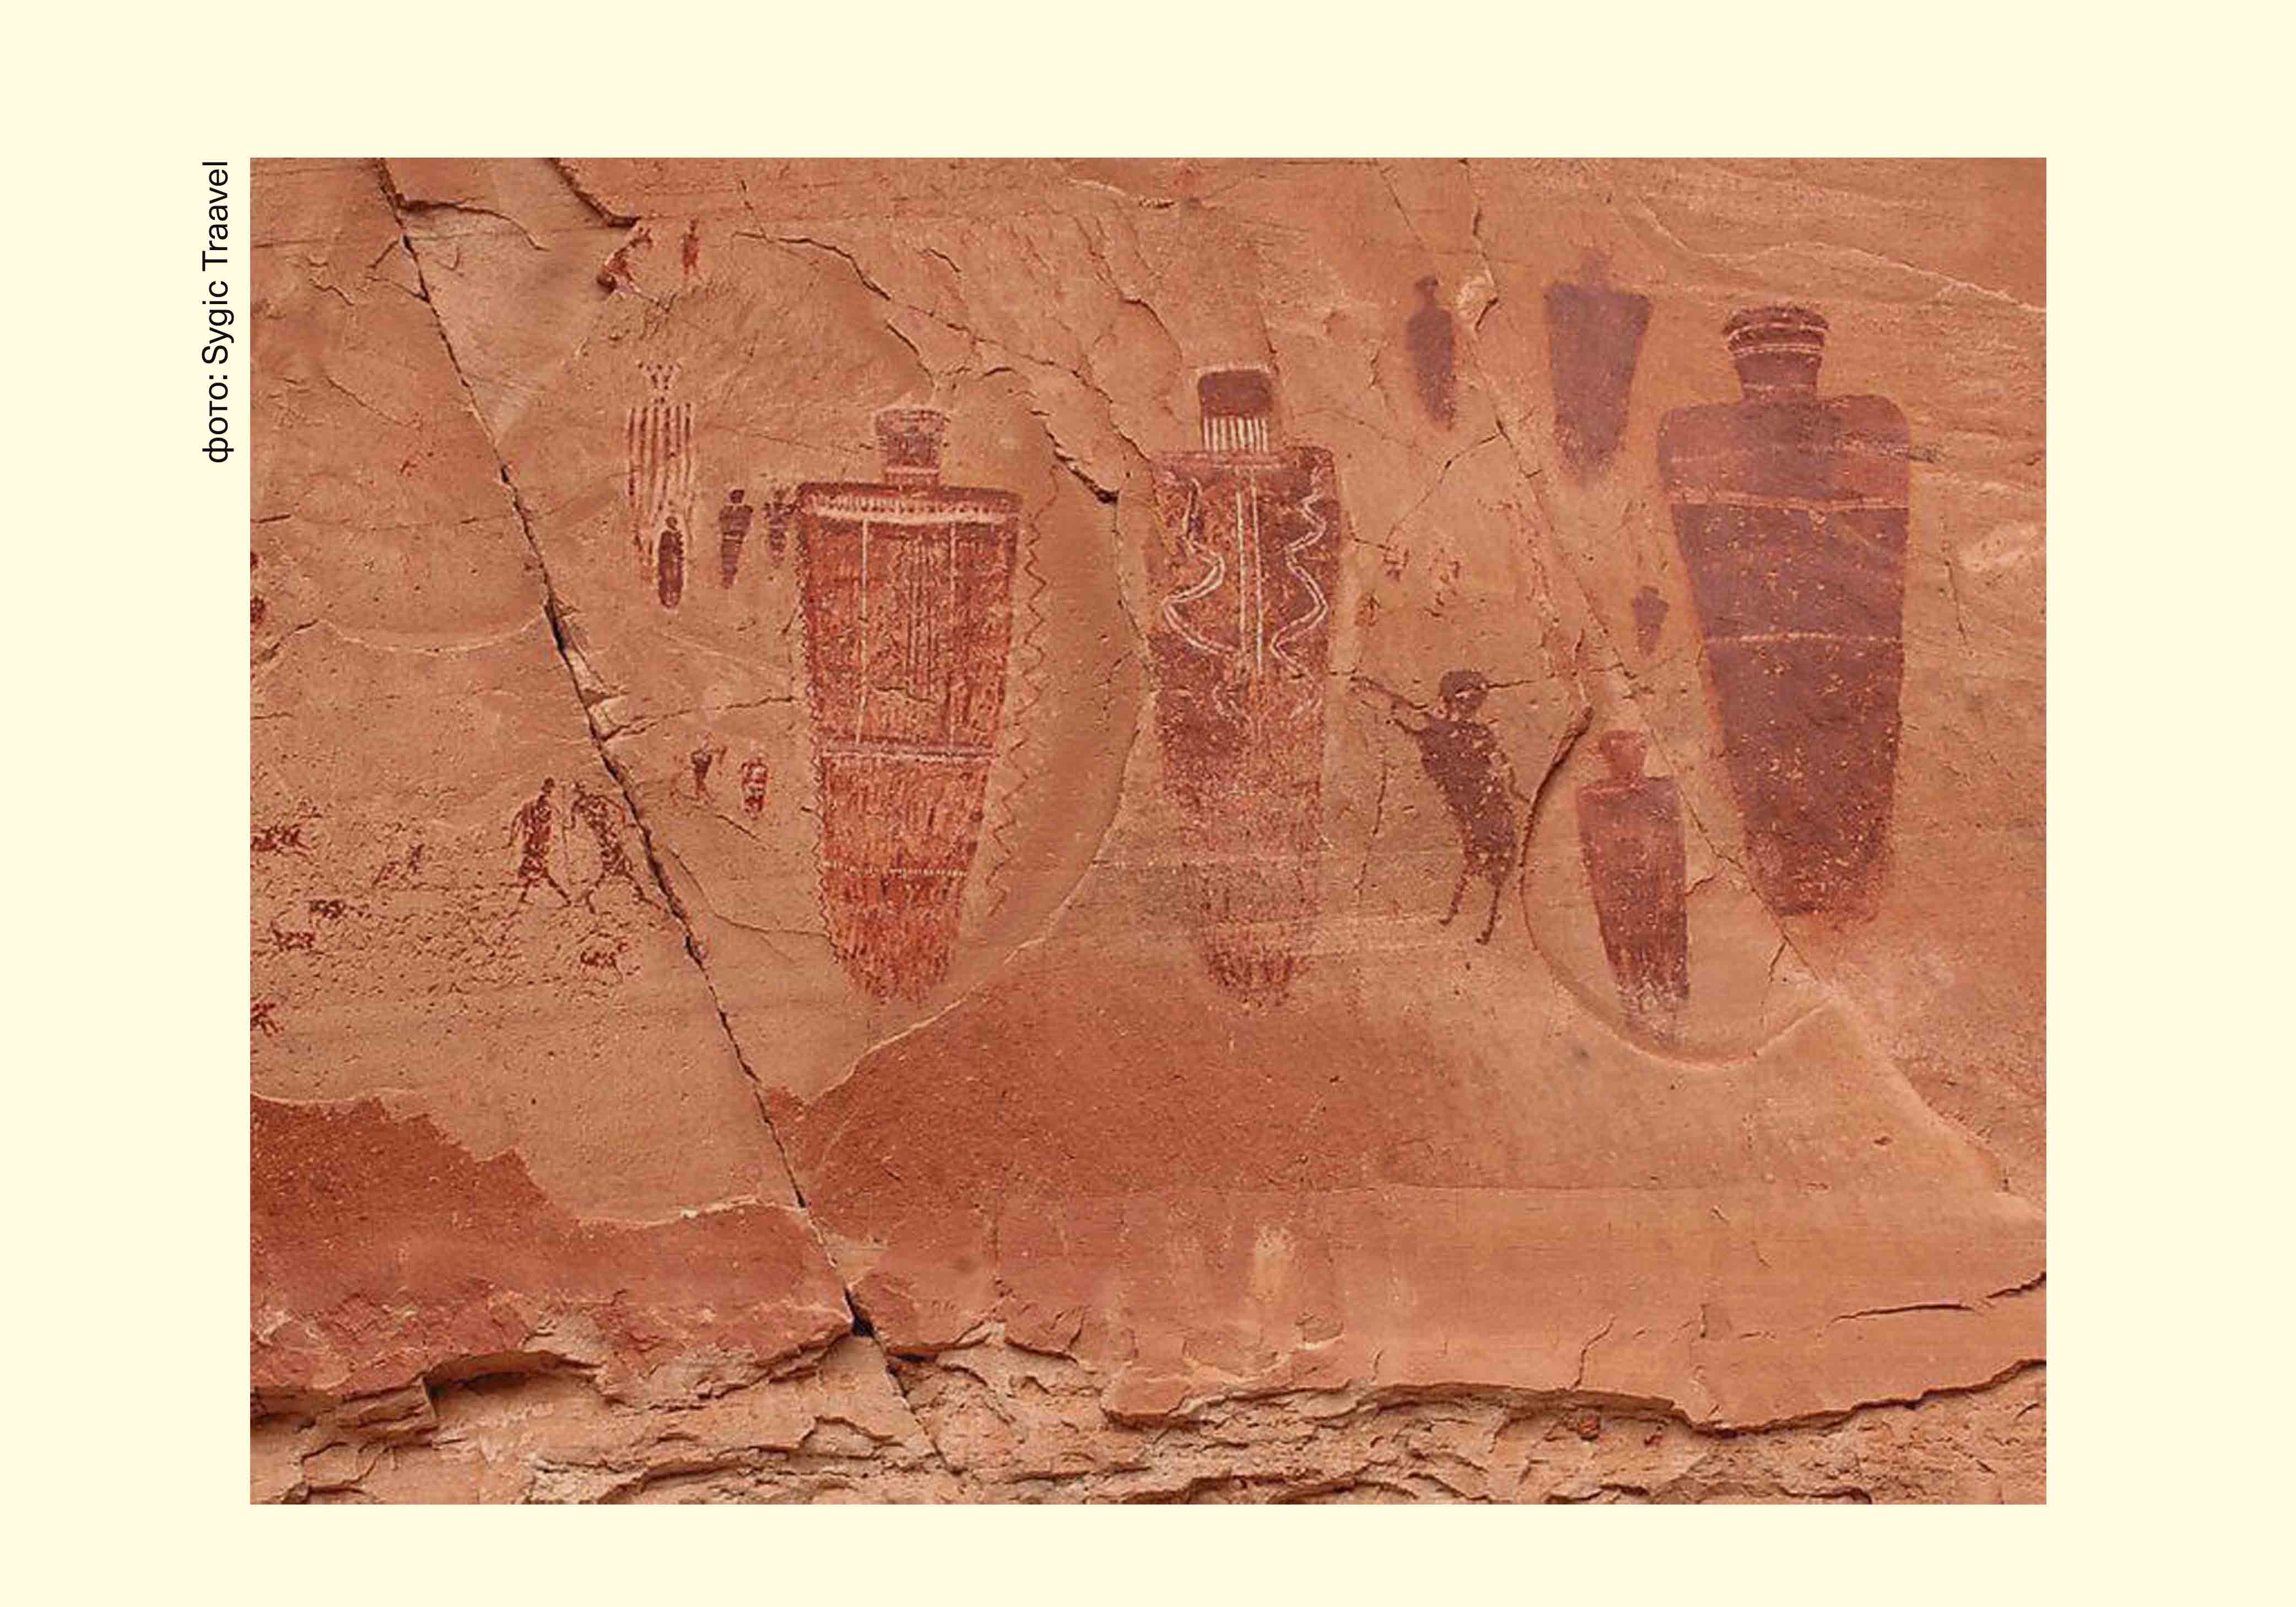 А откуда эти наскальные рисунки? Кстати, они считаются одним из доказательств нахождения древних людей в 9000-7000 годы до н.э.